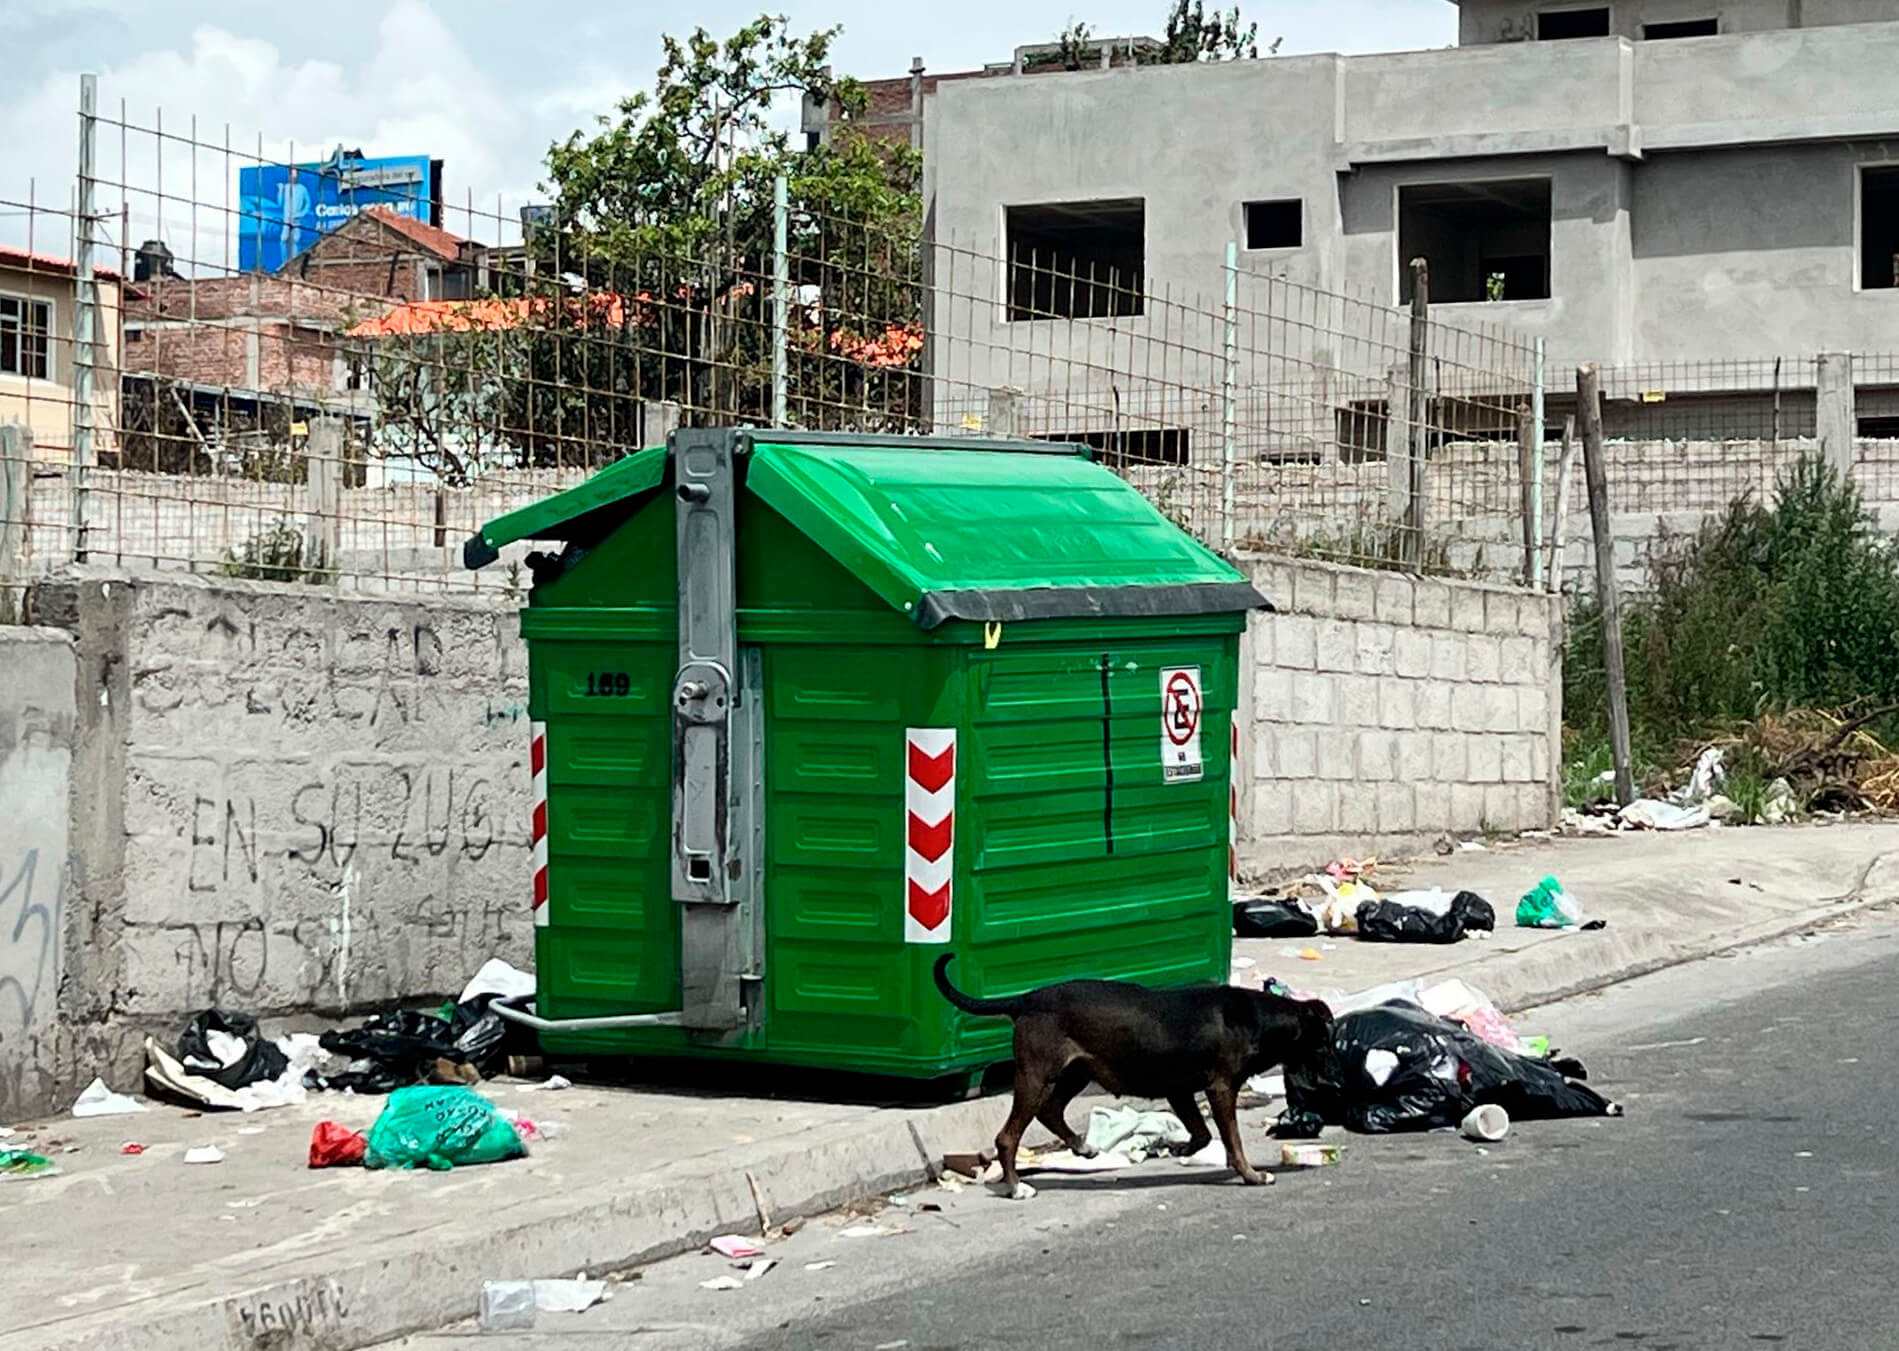 En el sur de Ambato varias son las quejas por la falta de recolección de basura.